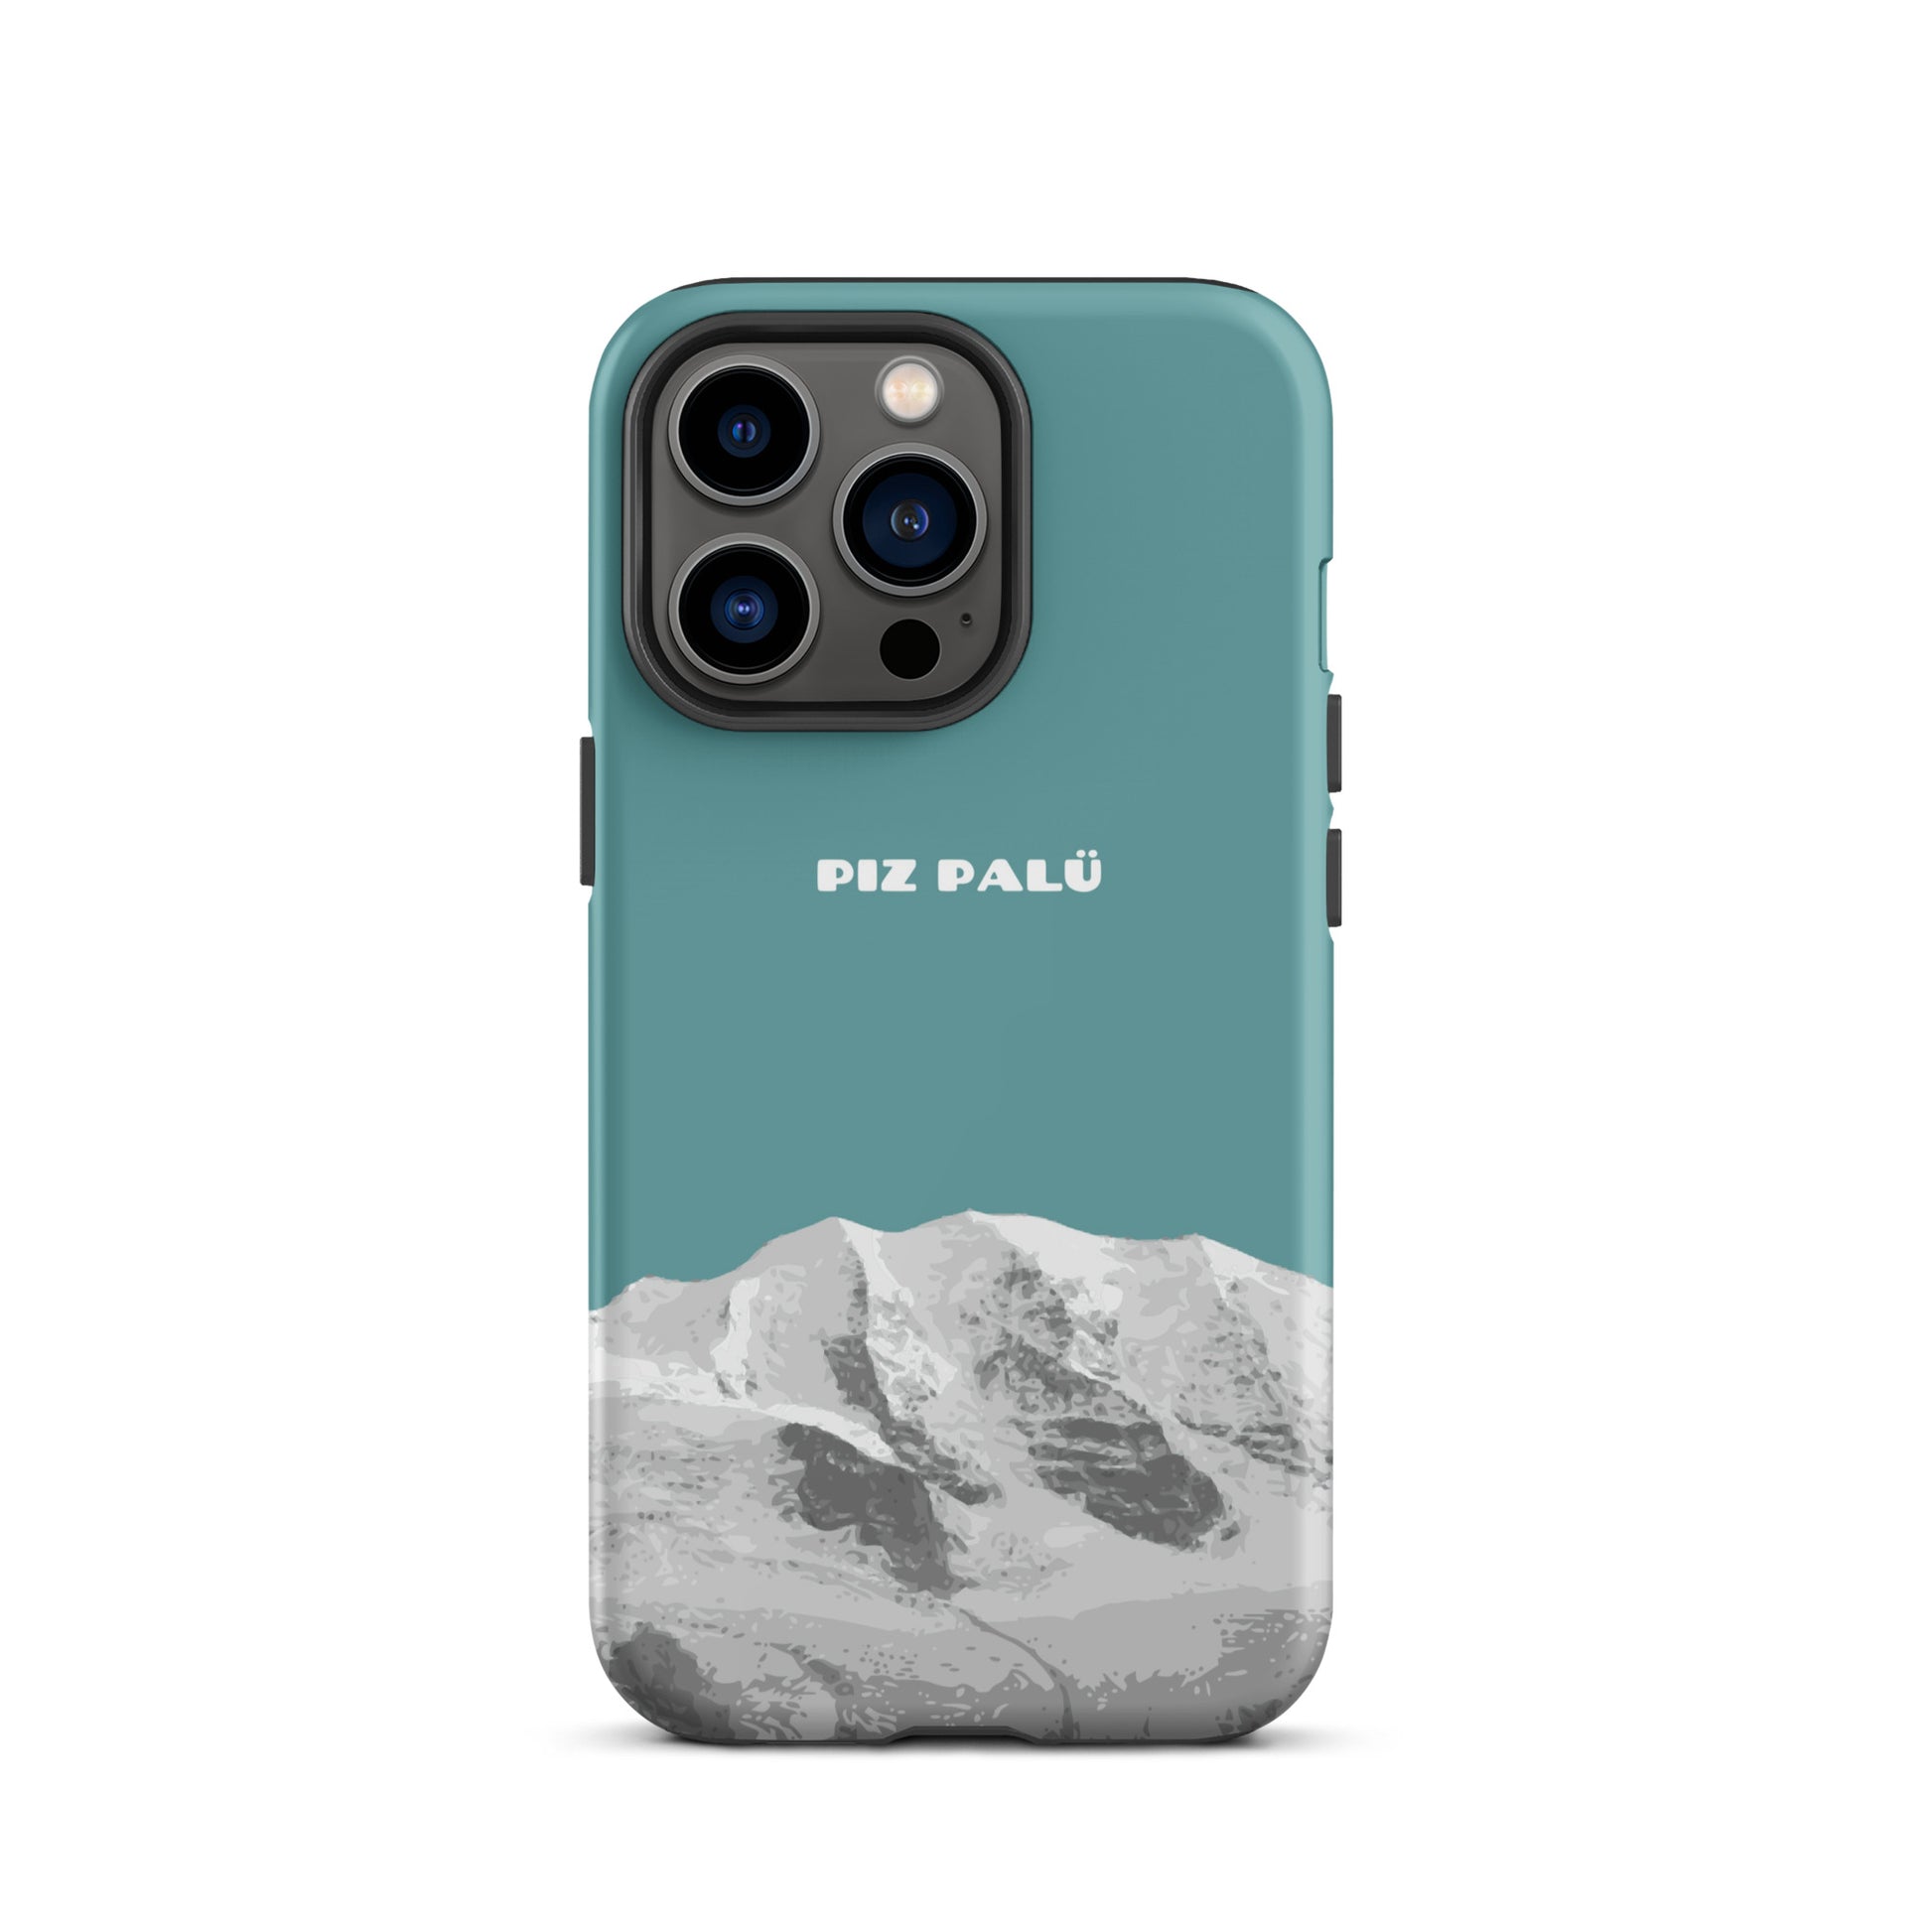 Hülle für das iPhone 13 Pro von Apple in der Farbe Kadettenblau, dass den Piz Palü in Graubünden zeigt.